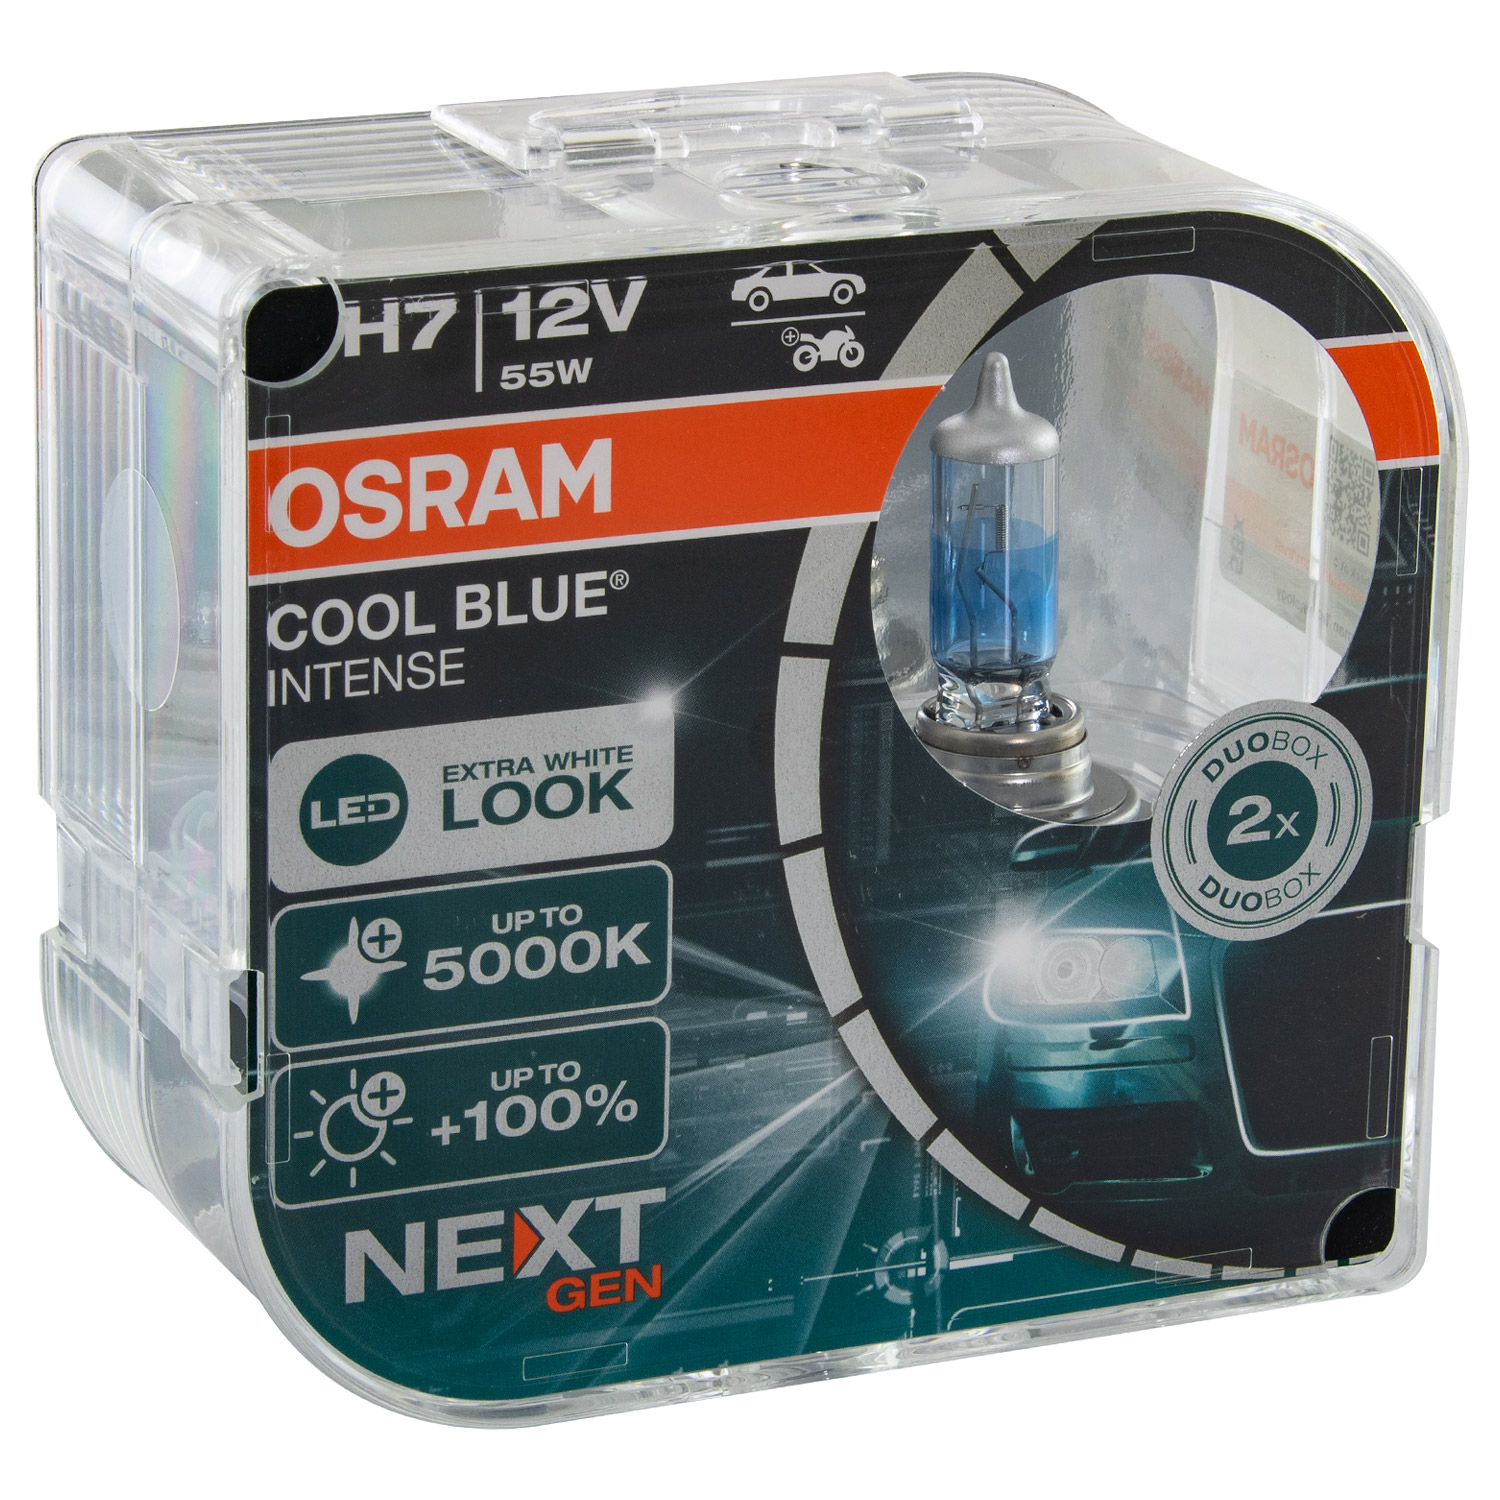 OSRAM COOL BLUE® INTENSE (Next Gen) H7 64210CBN-HCB DUOBOX